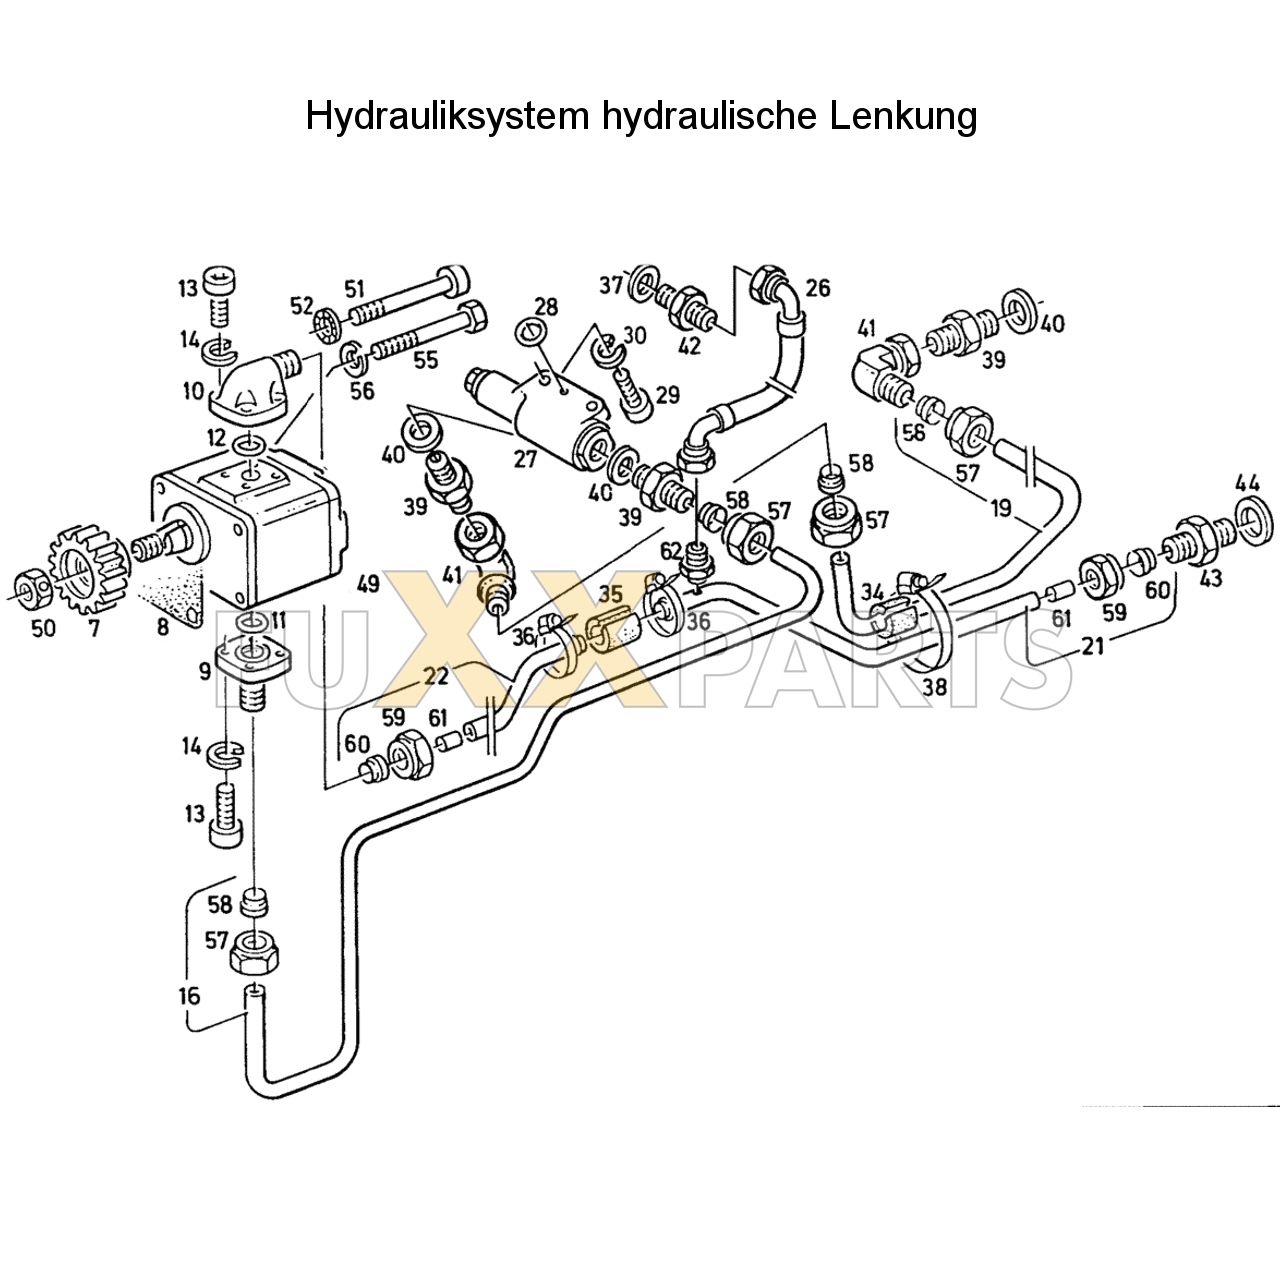 D 5207 Hydrauliksystem hyd. Lenkung